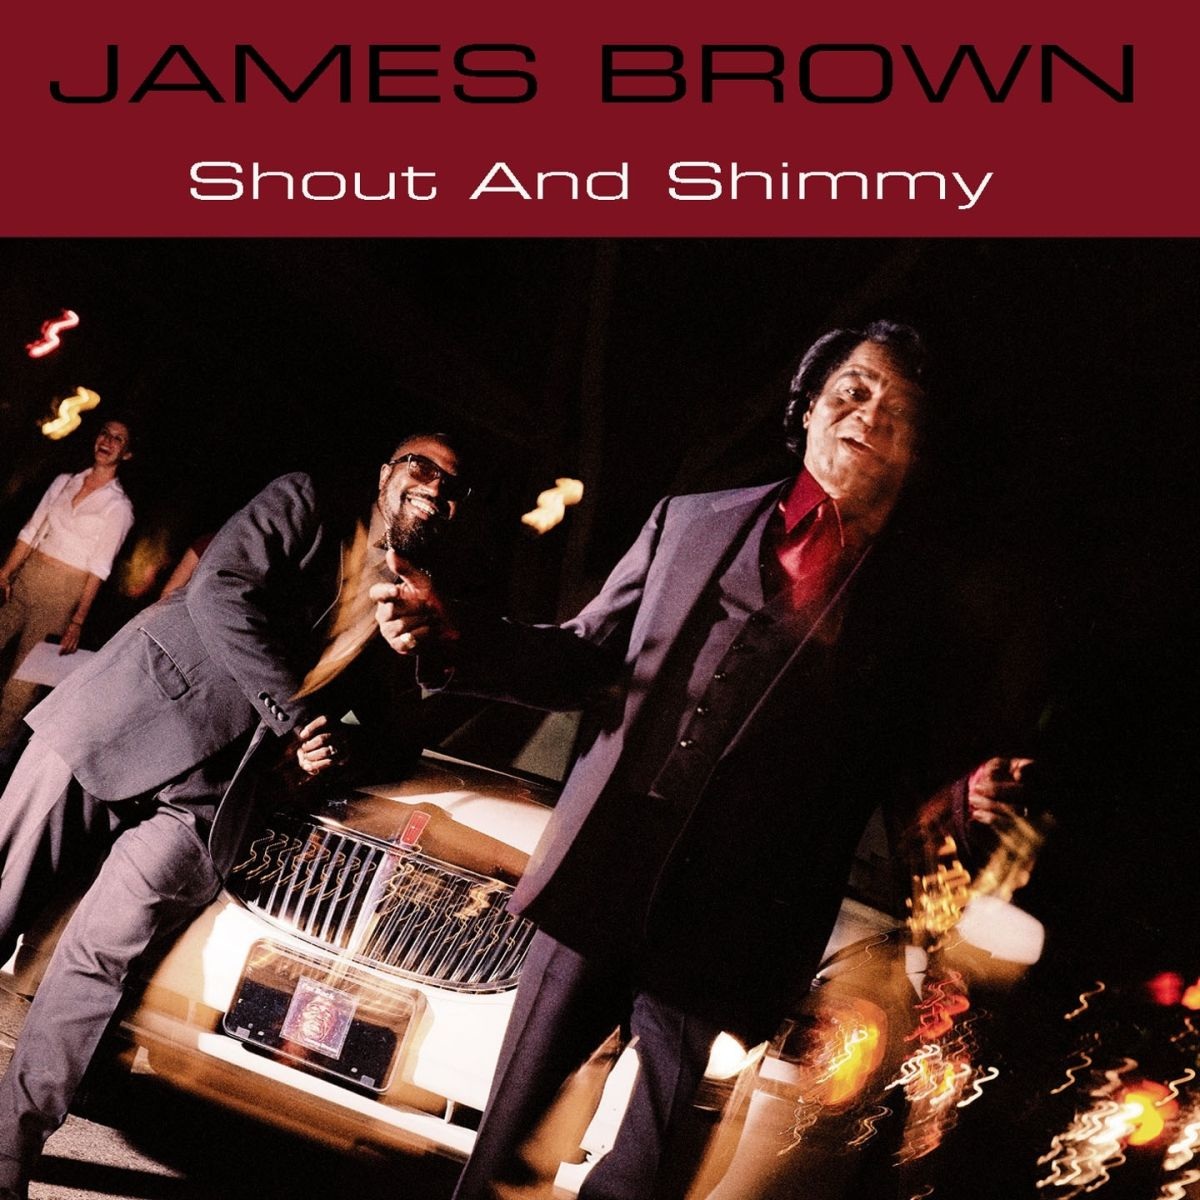 james brown discography download zip